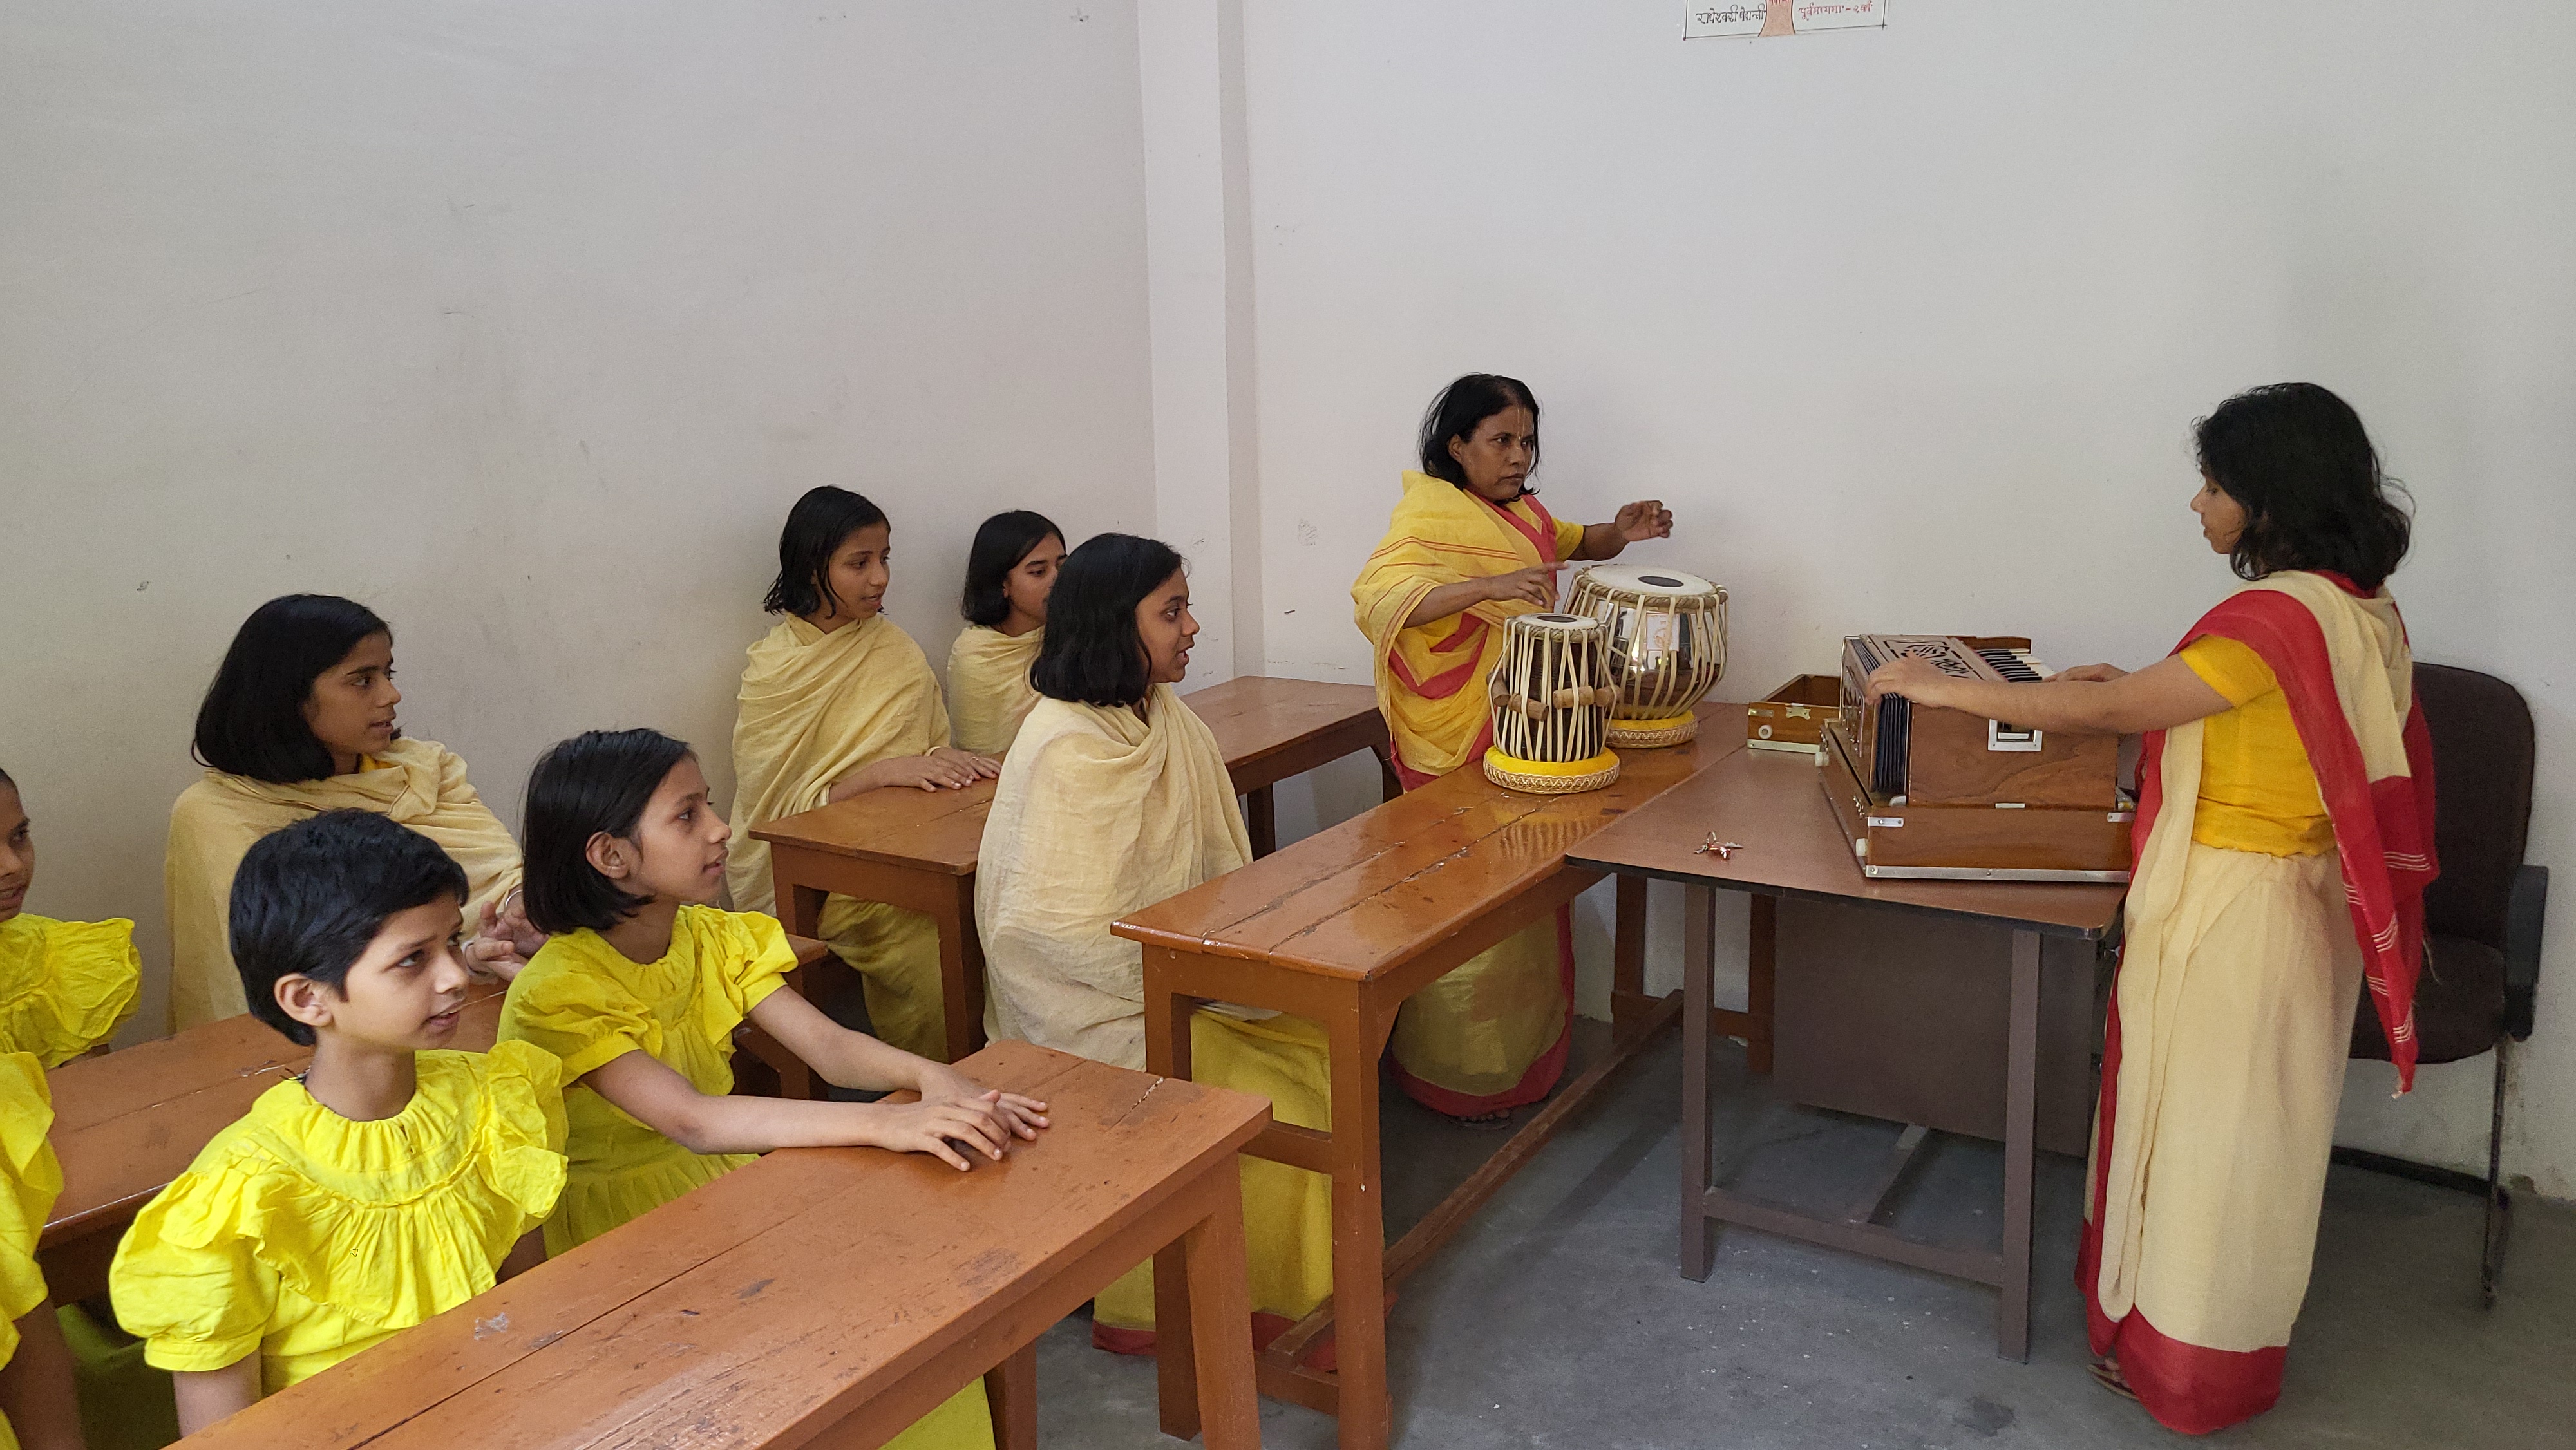 काशी के गुरुकुल में छात्राएं धर्म और अध्यात्म की शिक्षा ले रहीं हैं.